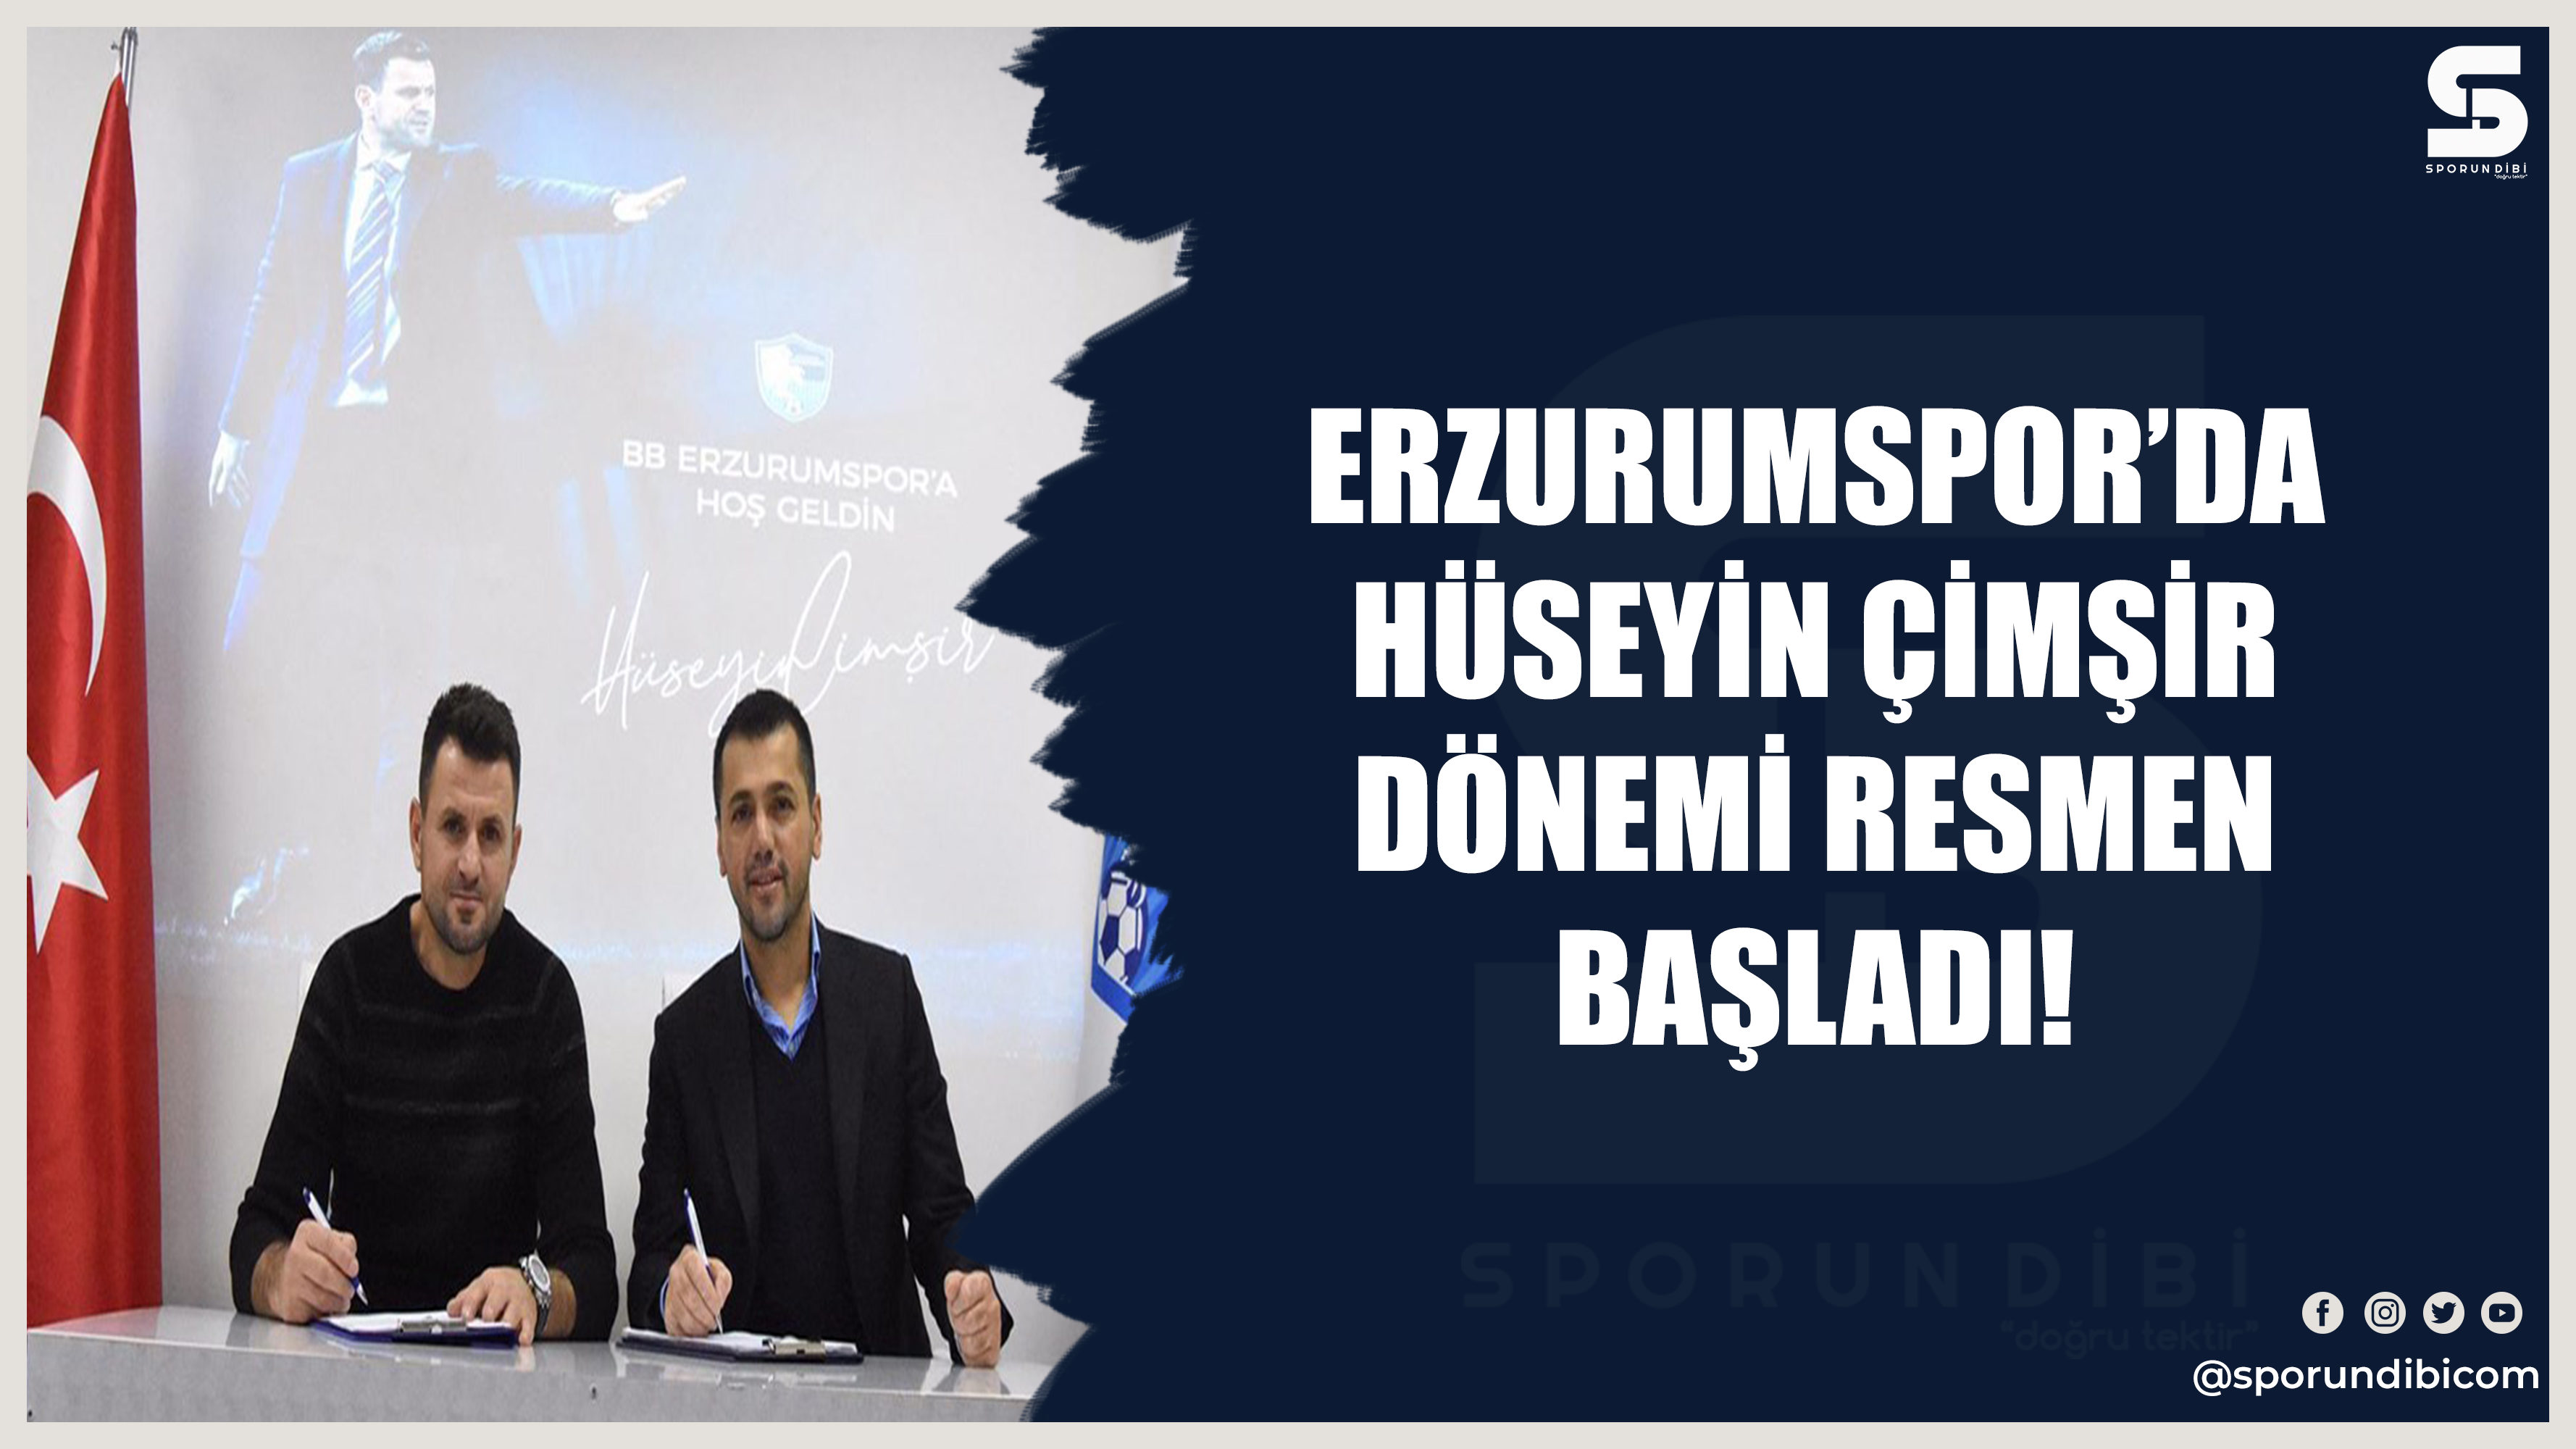 Erzurumspor'da Hüseyin Çimşir dönemi resmen başladı!